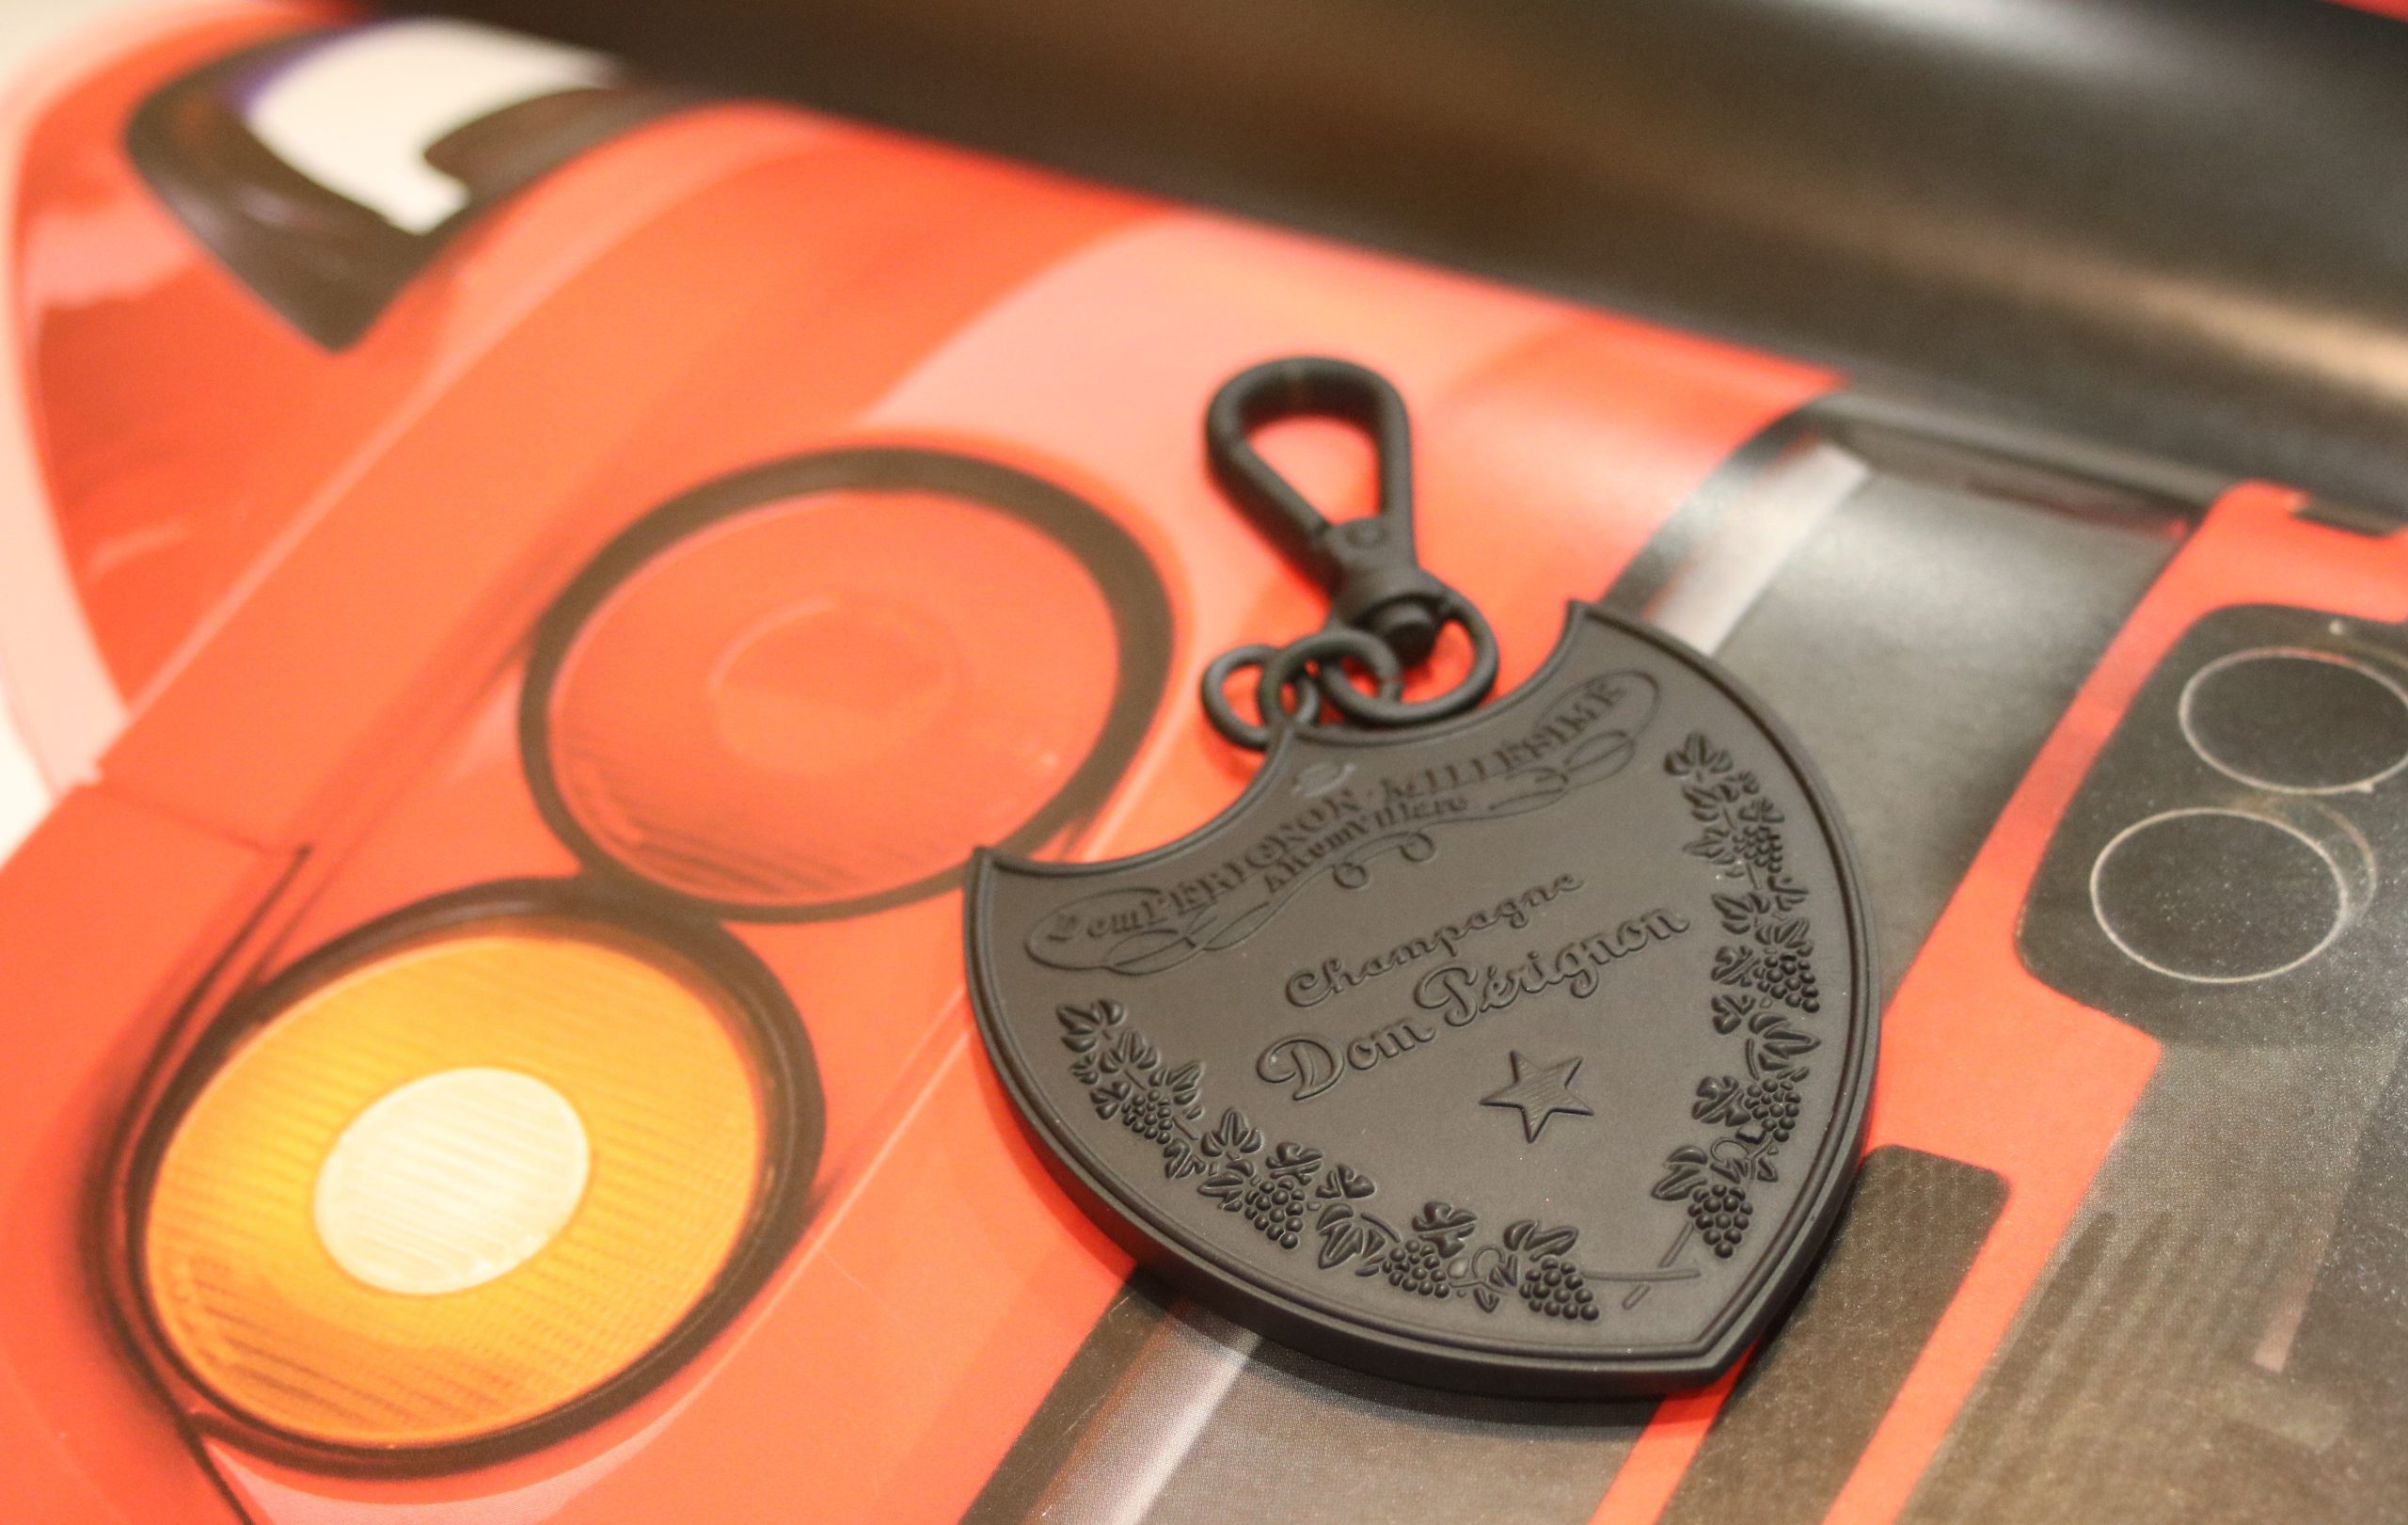 SOLD / ELADVA – Dom Pérignon márkájú pajzs alakú kulcstartó egyedi Dom Pérignon díszdobozban – 63.400.-Ft